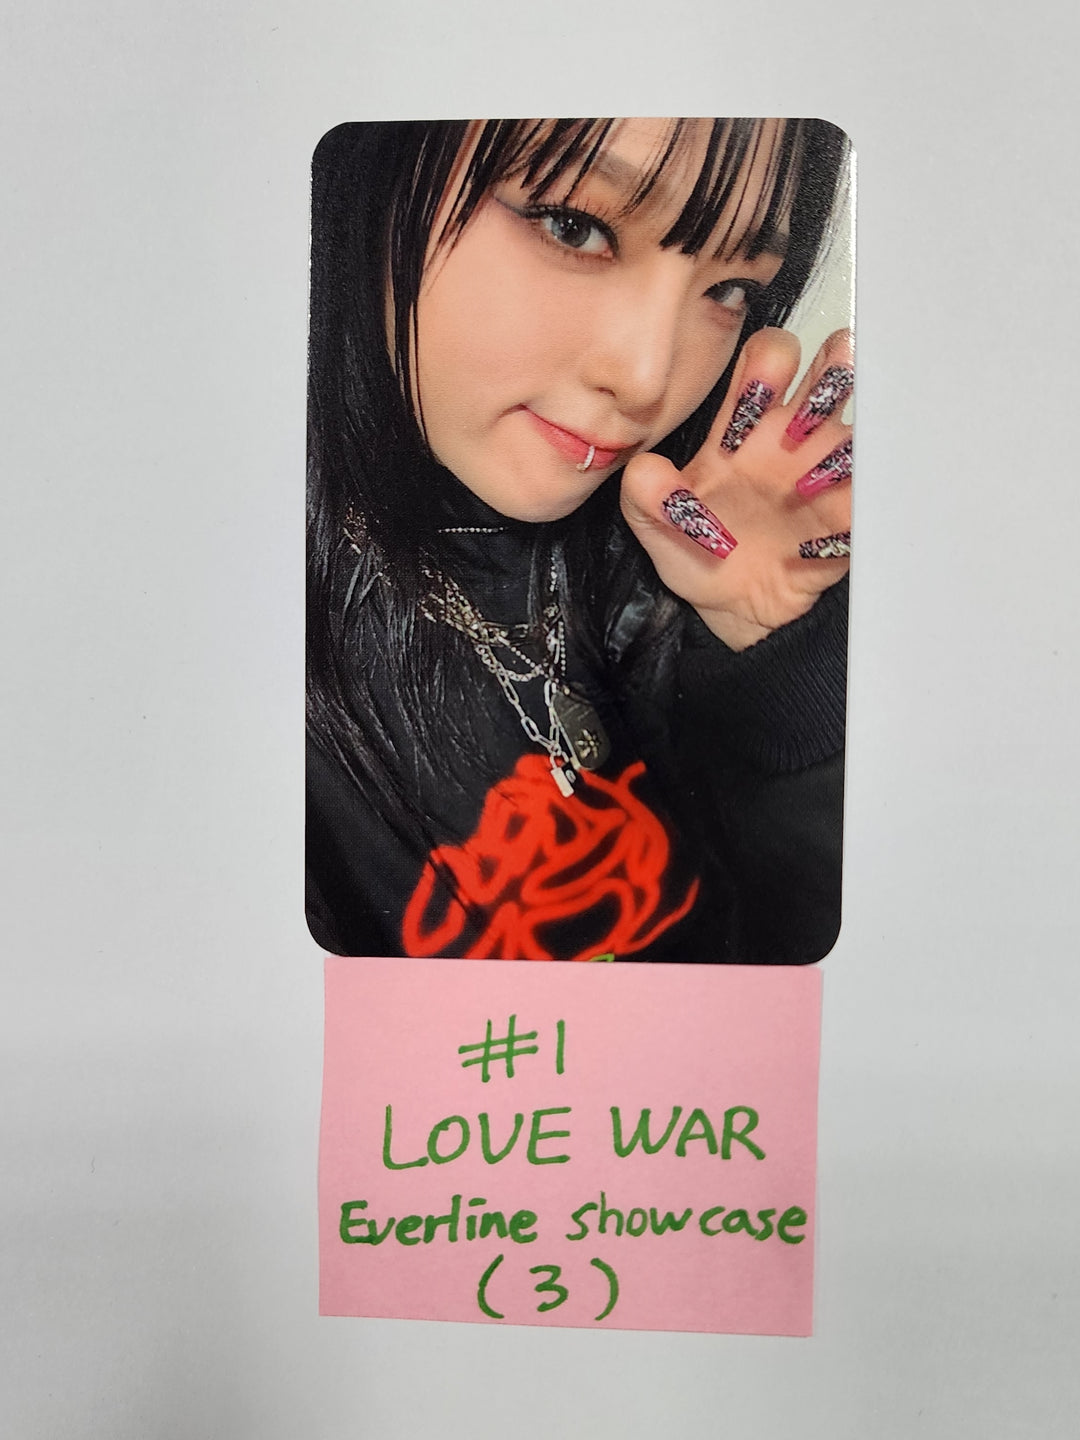 YENA "LOVE WAR" - Everline Pre-Order Benefit Photocard